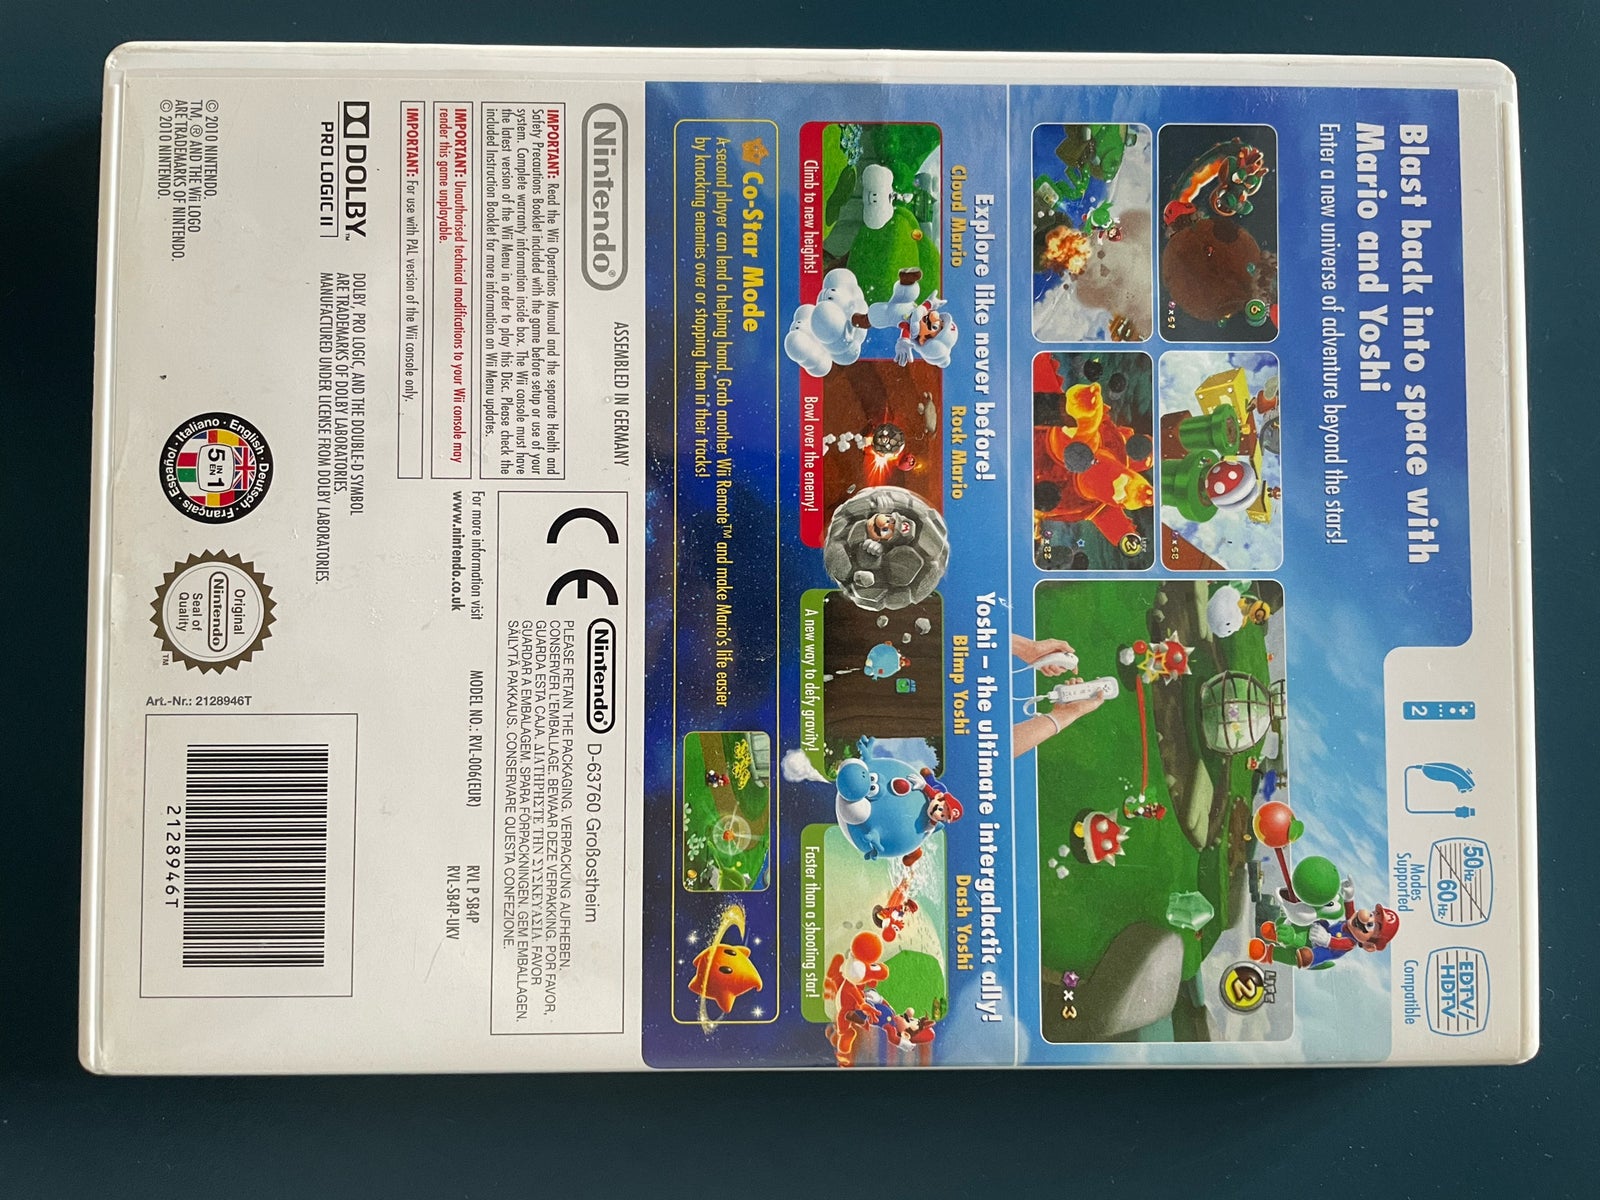 Super Mario Galaxy 2, Nintendo Wii